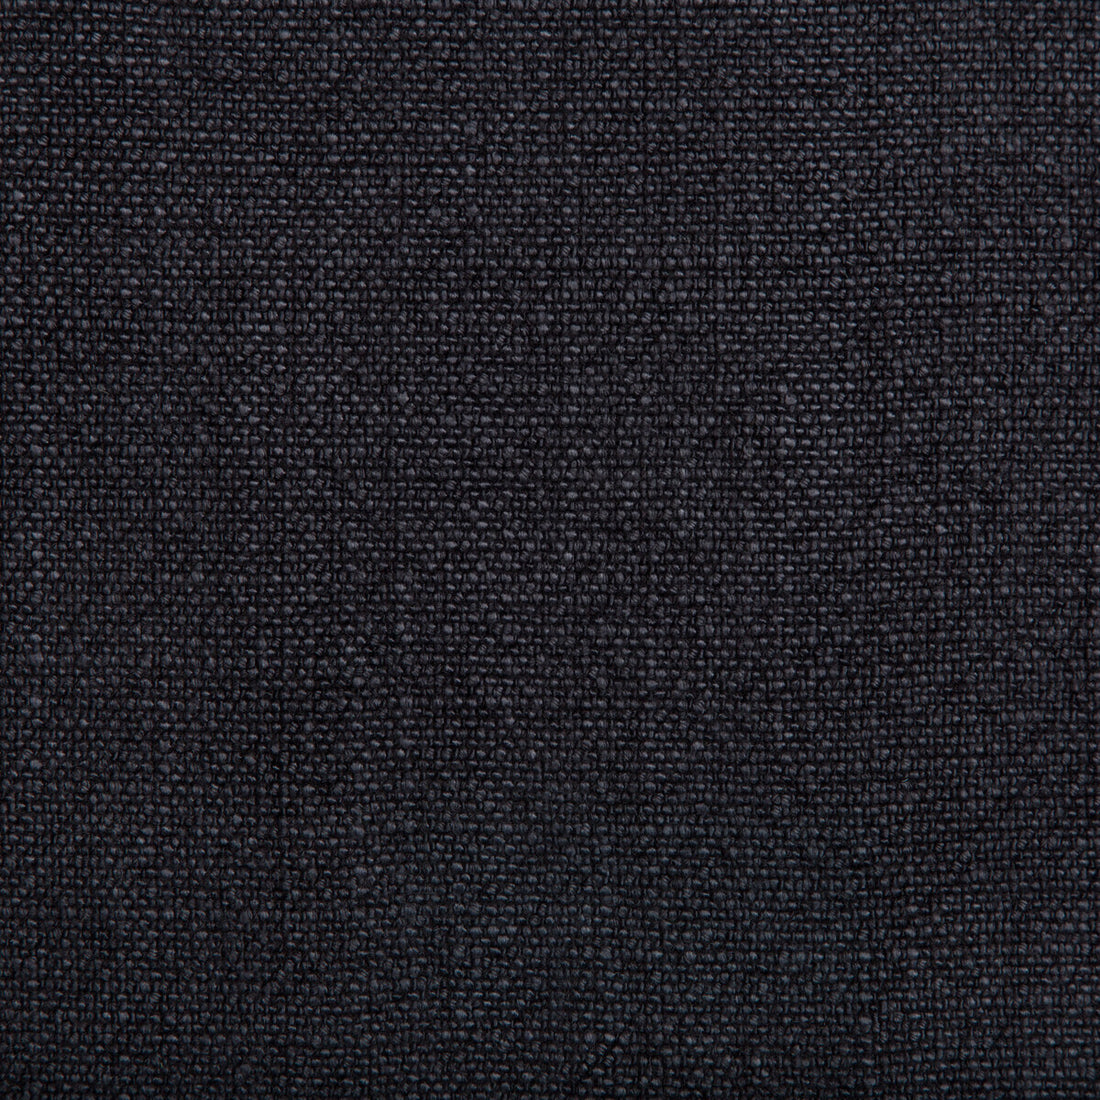 Kravet Basics fabric in 35189-50 color - pattern 35189.50.0 - by Kravet Basics